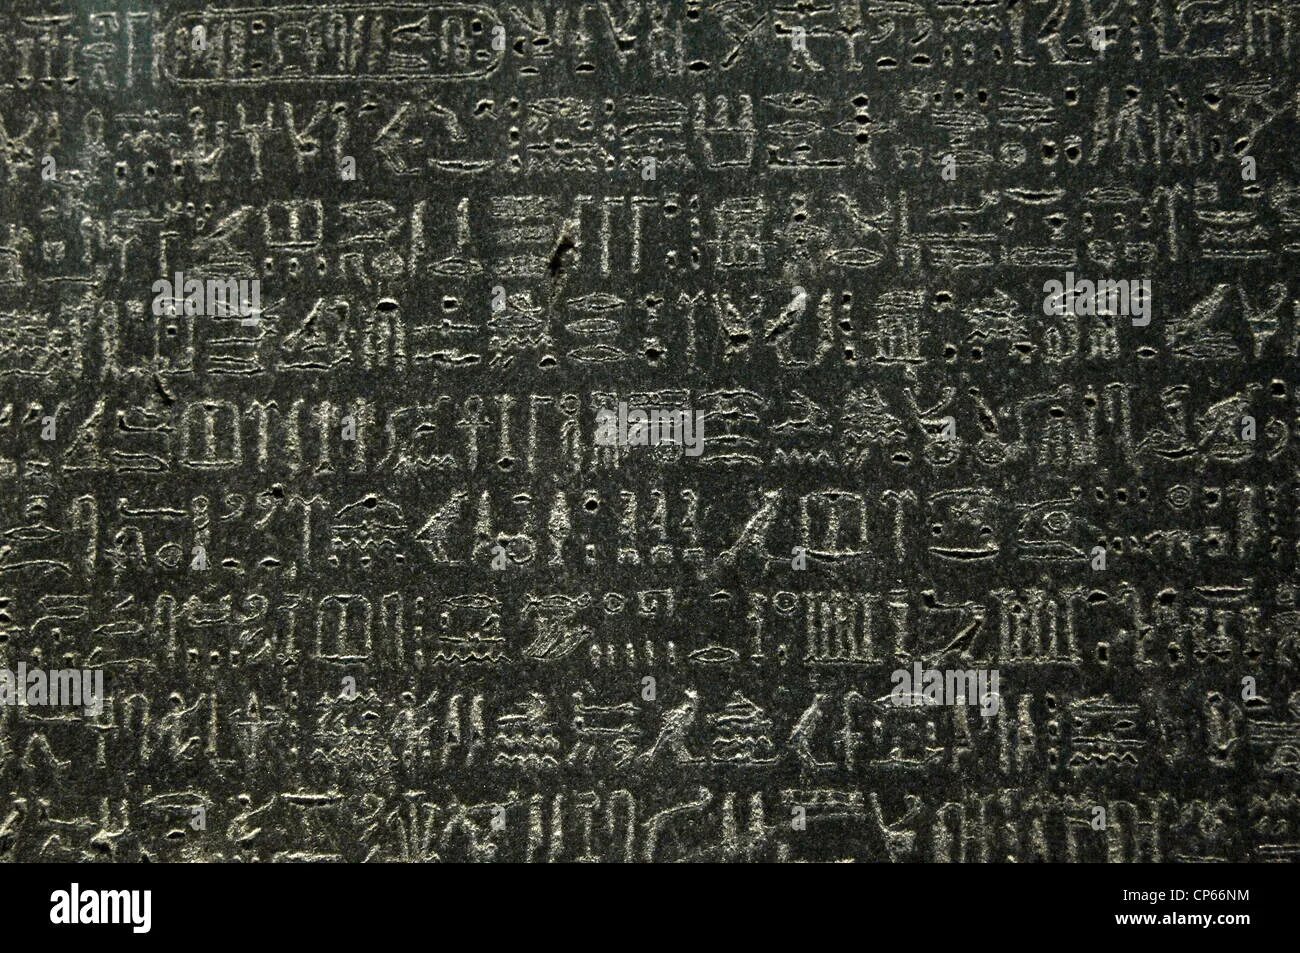 Египетские иероглифы Розеттский камень. Розетта Египет город. Камень Розетты. Розеттский камень иероглифы отрисовка.